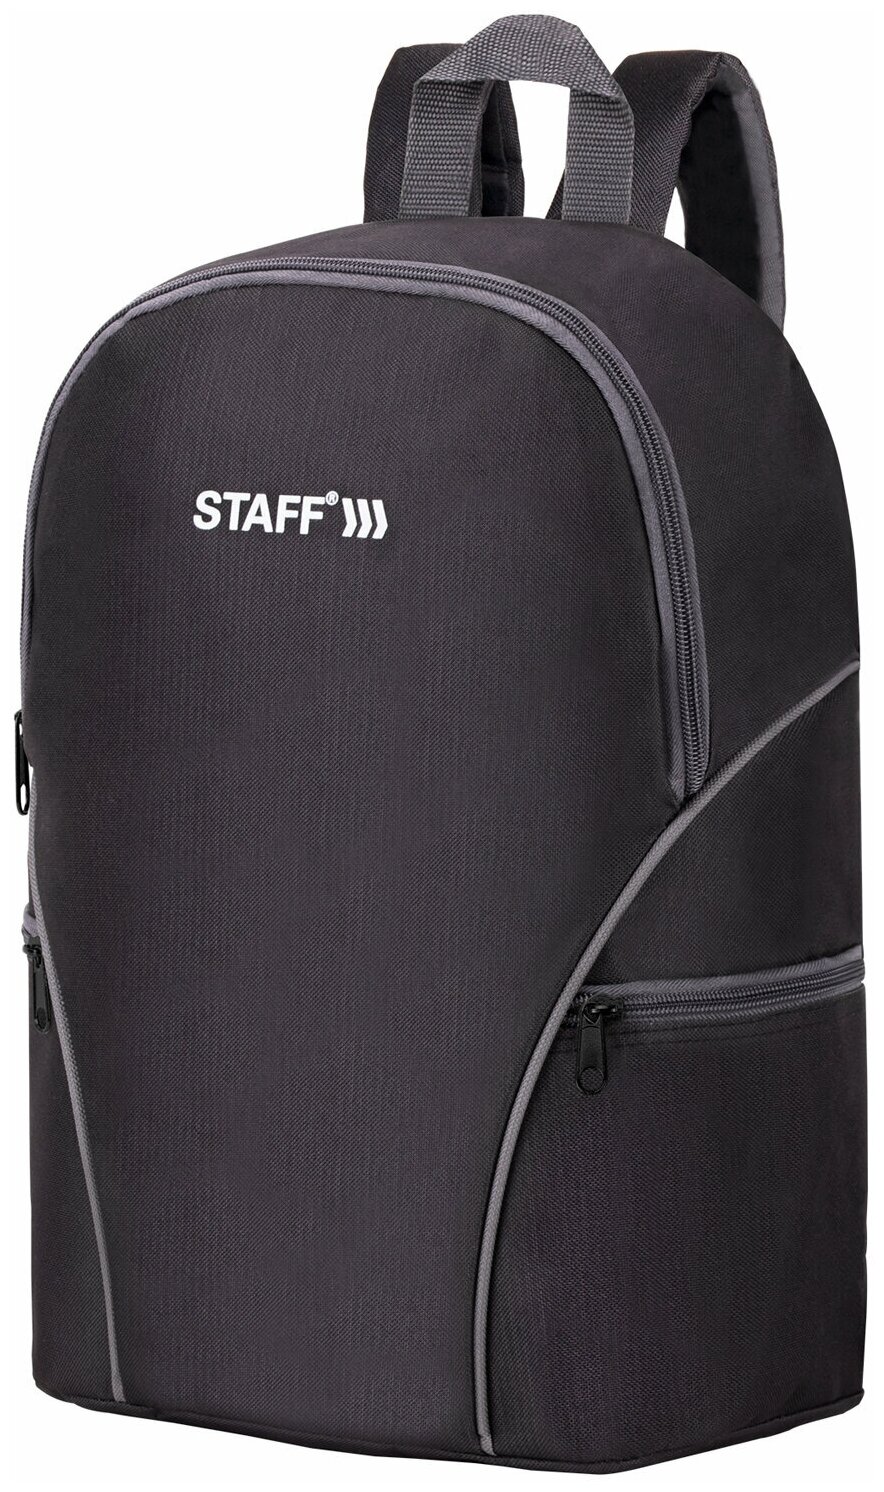 Рюкзак Staff Trip универсальный, 2 кармана, черный с серыми деталями, 40x27x15,5 см (270787)